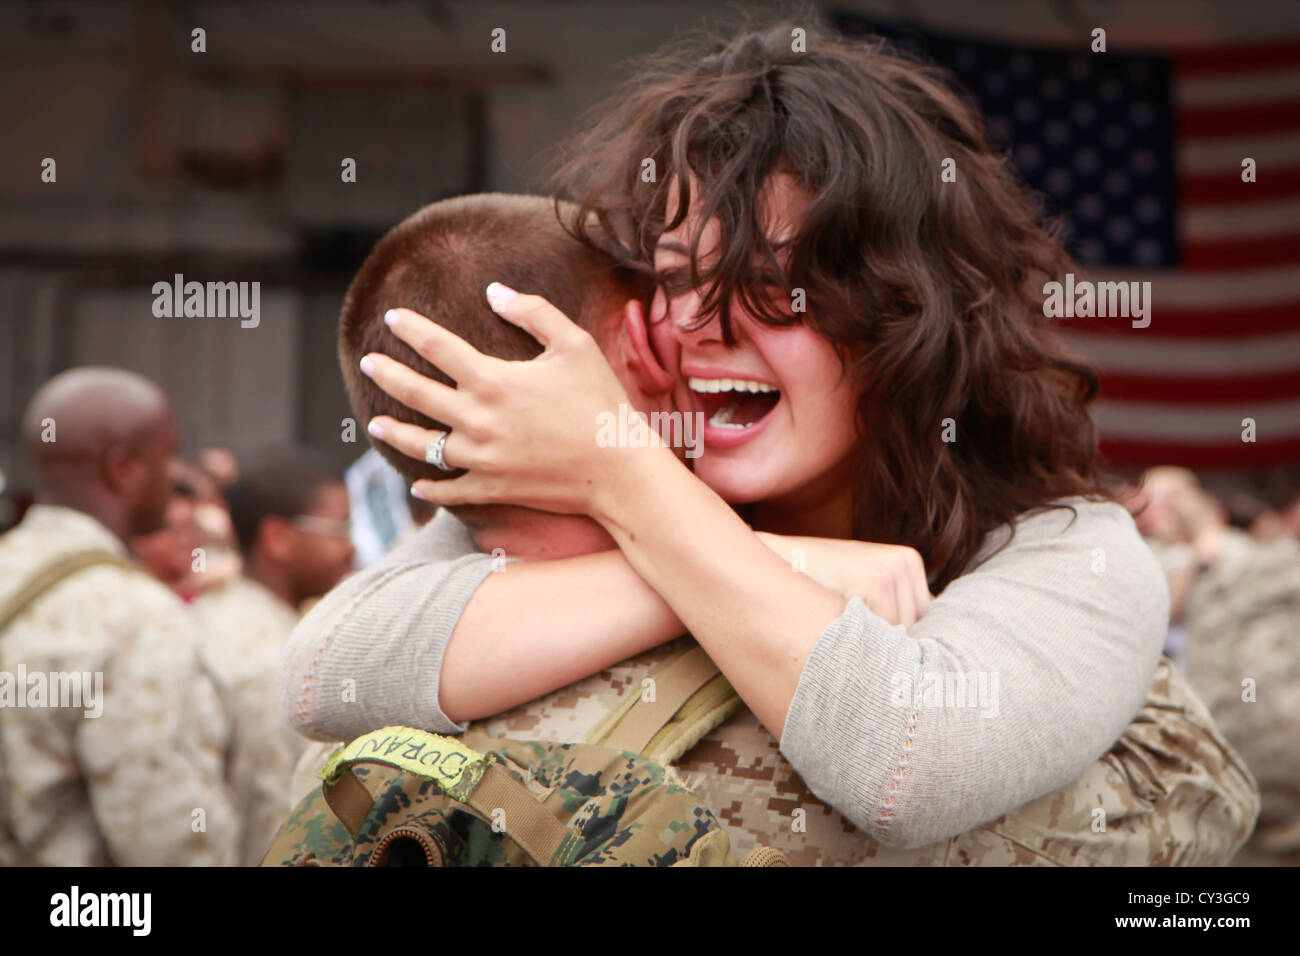 Un marine statunitense abbracci la moglie durante una cerimonia di ritorno il 2 ottobre 2012 presso lo squadrone hangar a bordo Marine Corps Air Station Cherry Point, North Carolina. Egli stava tornando da una distribuzione in Afghanistan. Foto Stock